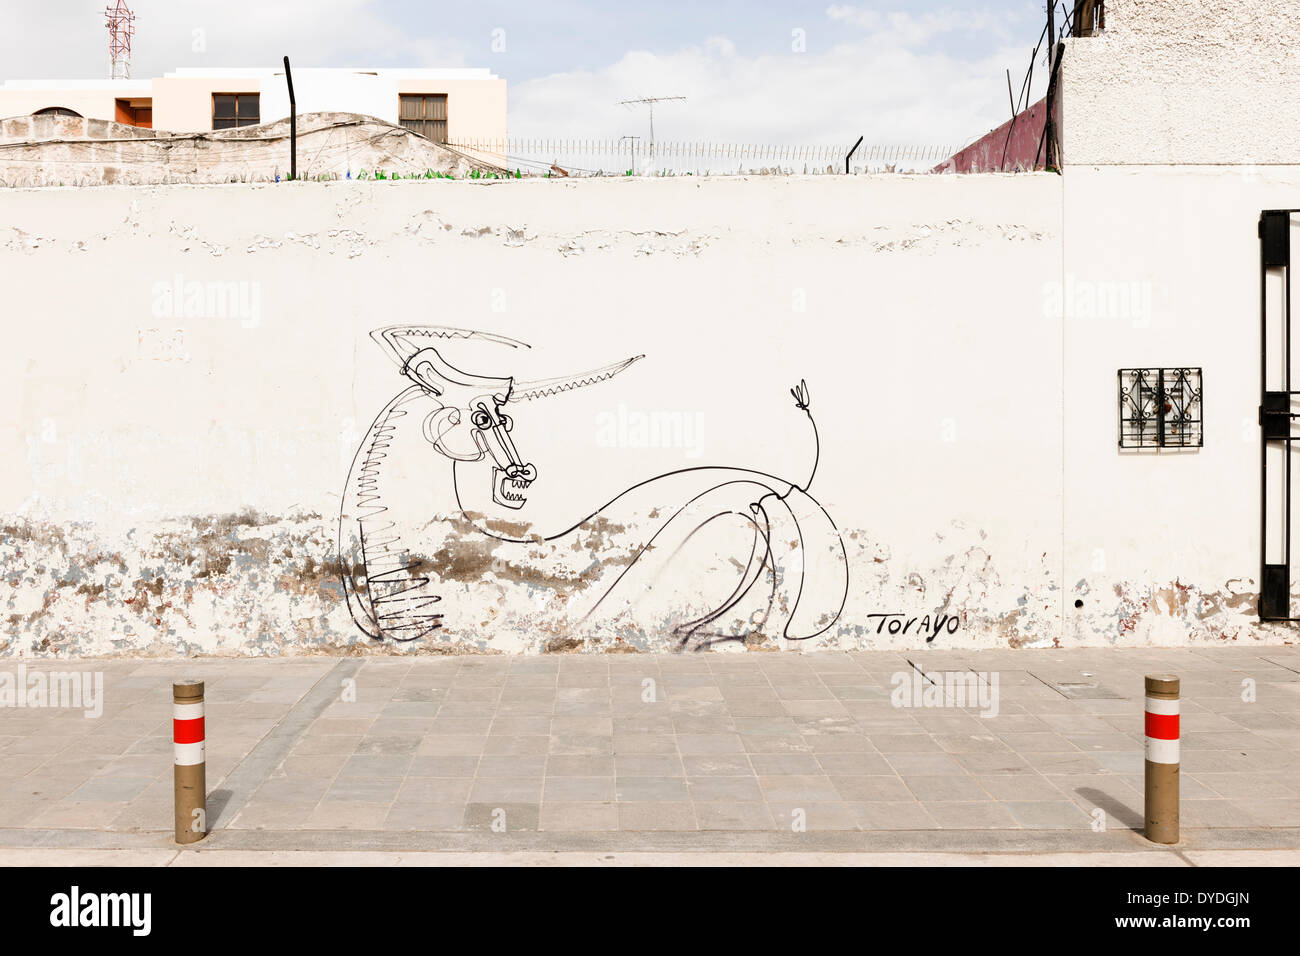 Street art by Torayo in Arequipa. Stock Photo